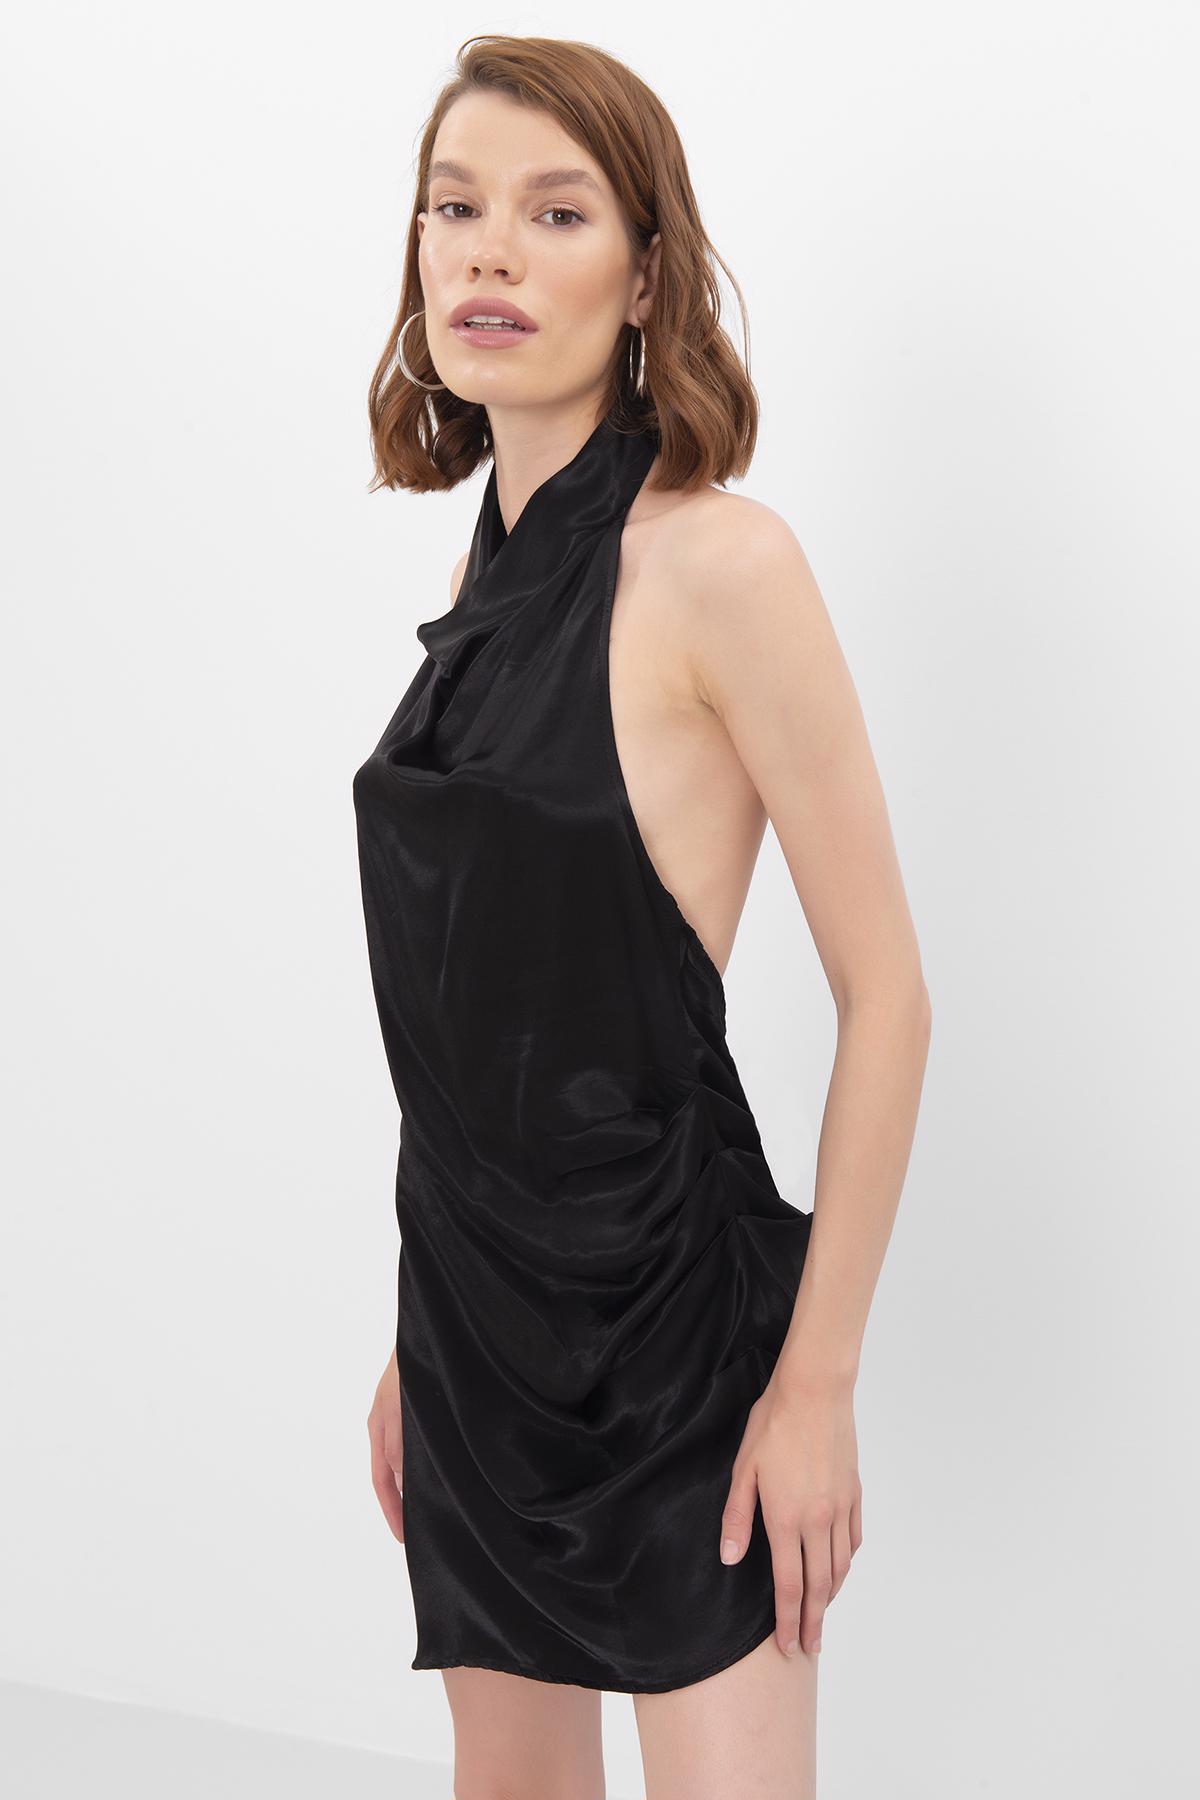 Bayan Siyah Asimetrik Etek Ucu Detaylı Mini Saten Elbise